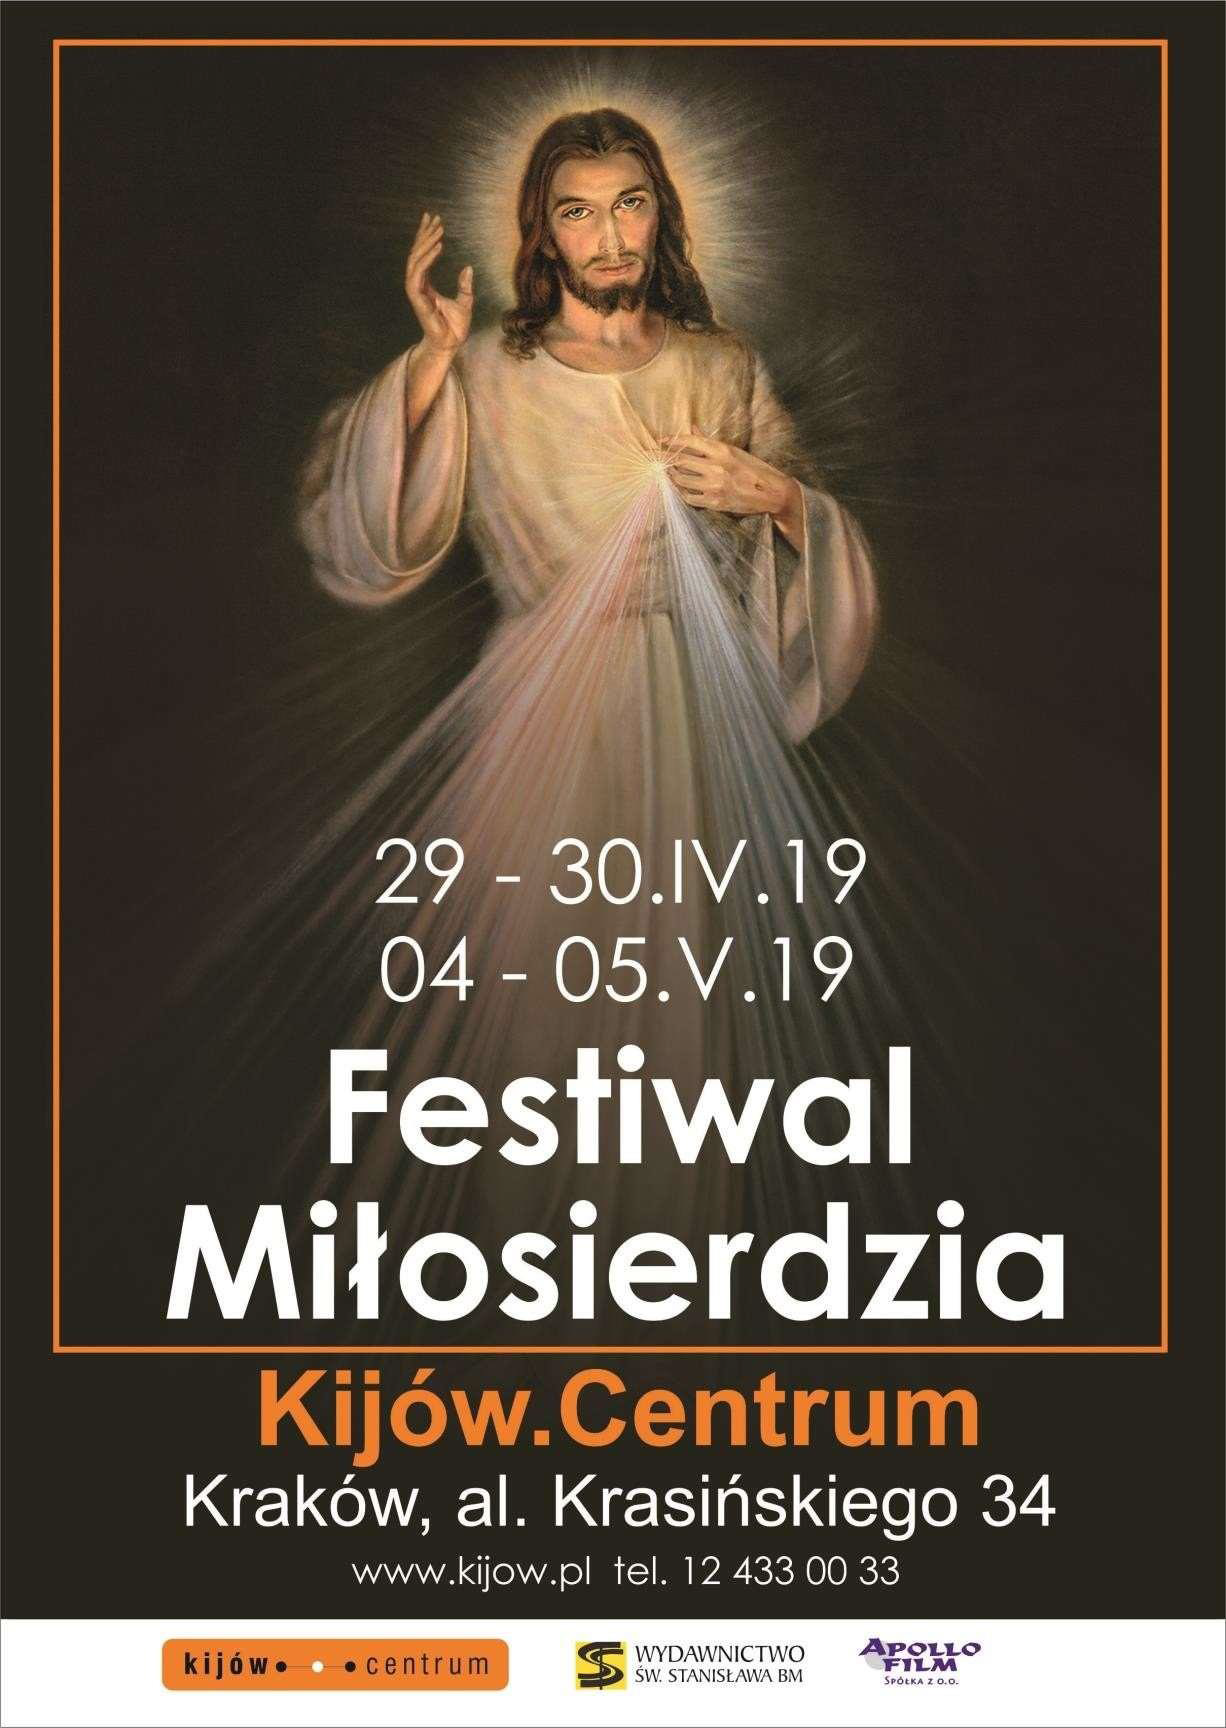 Festiwal Miłosierdzia w Kinie Kijów w Krakowie